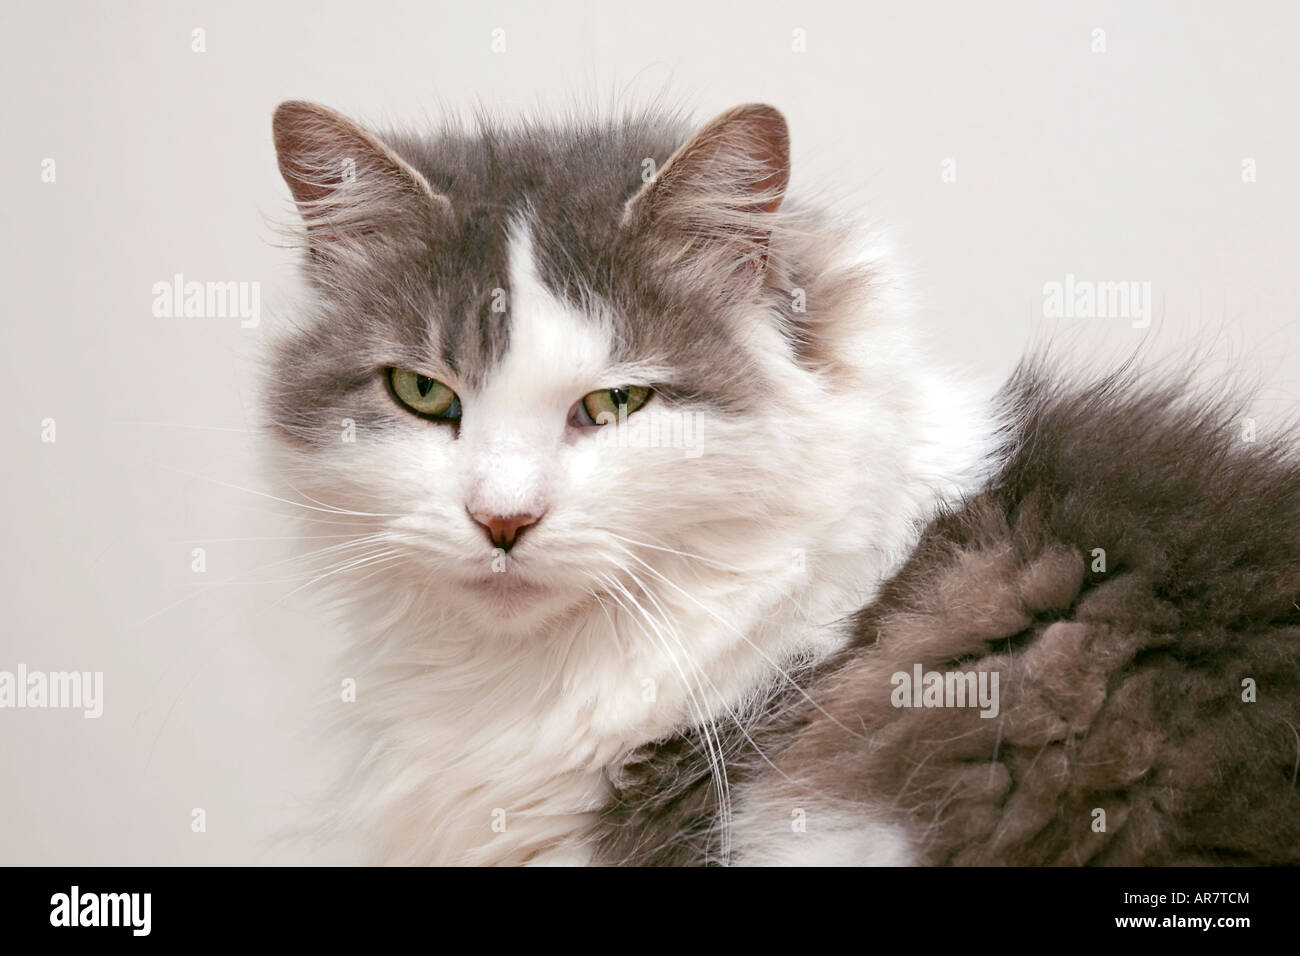 Ritratto di un adulto femmina Fluffy grigio e bianco gatto domestico (Felis catus) guardando direttamente la macchina fotografica Foto Stock